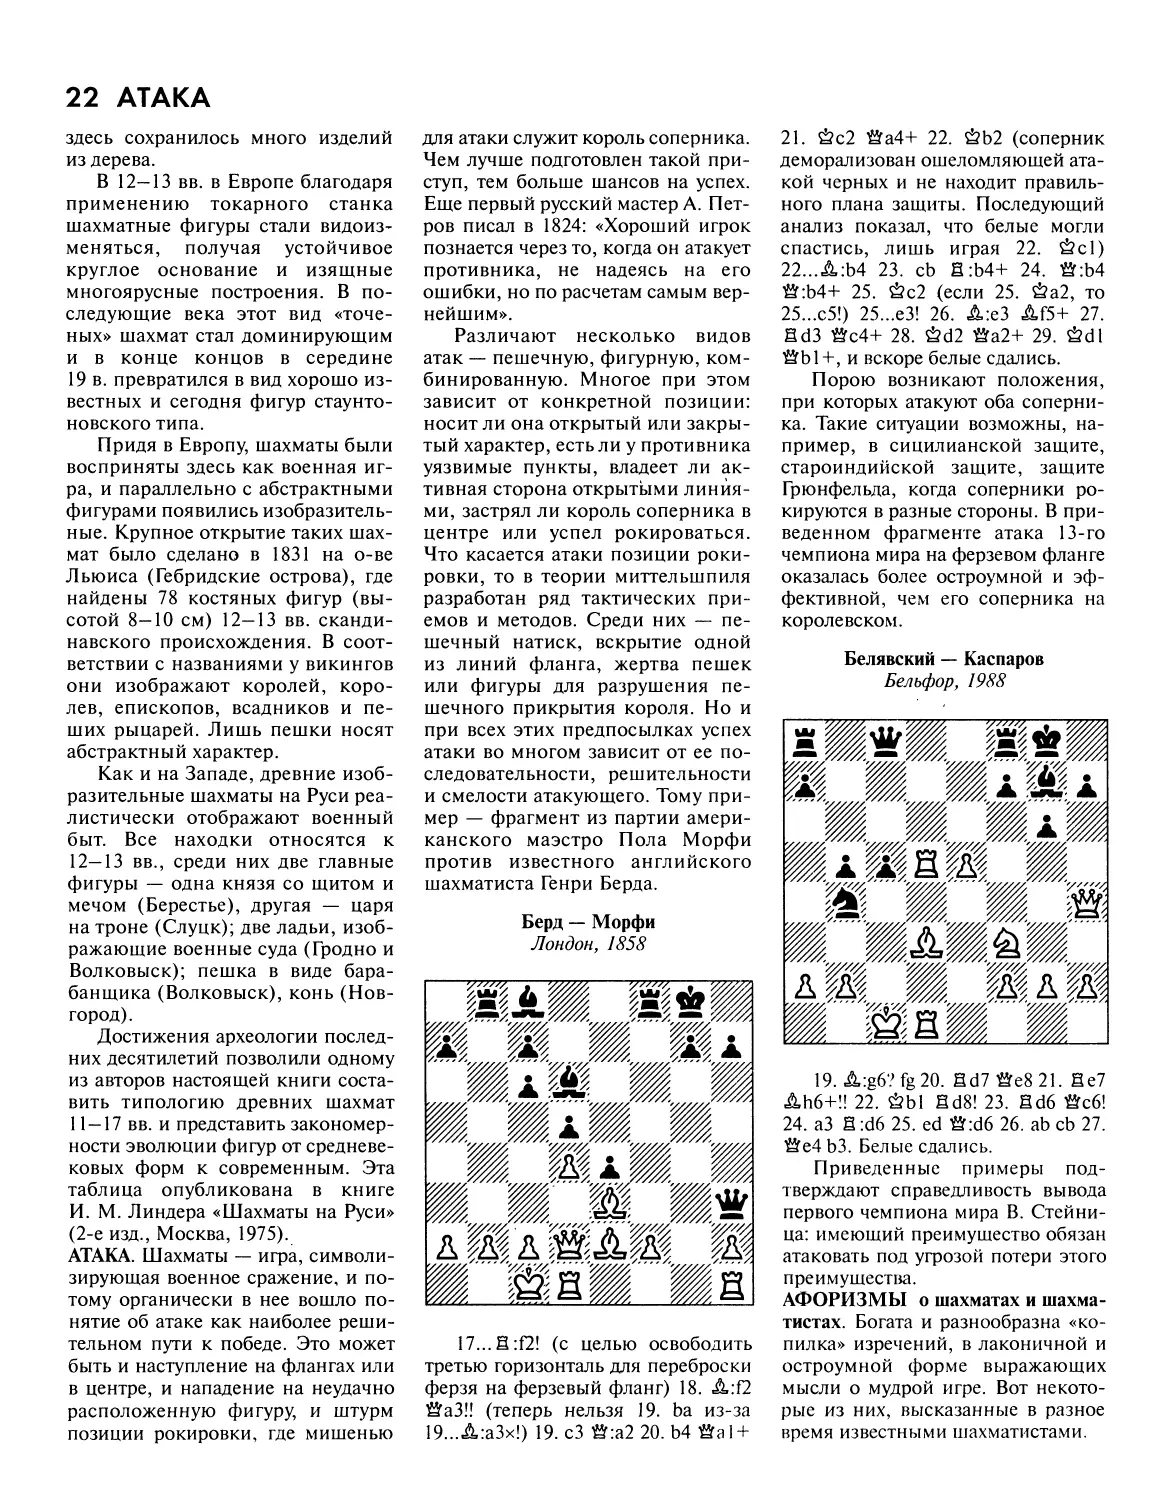 Атака
Афоризмы о шахматах и шахматистах